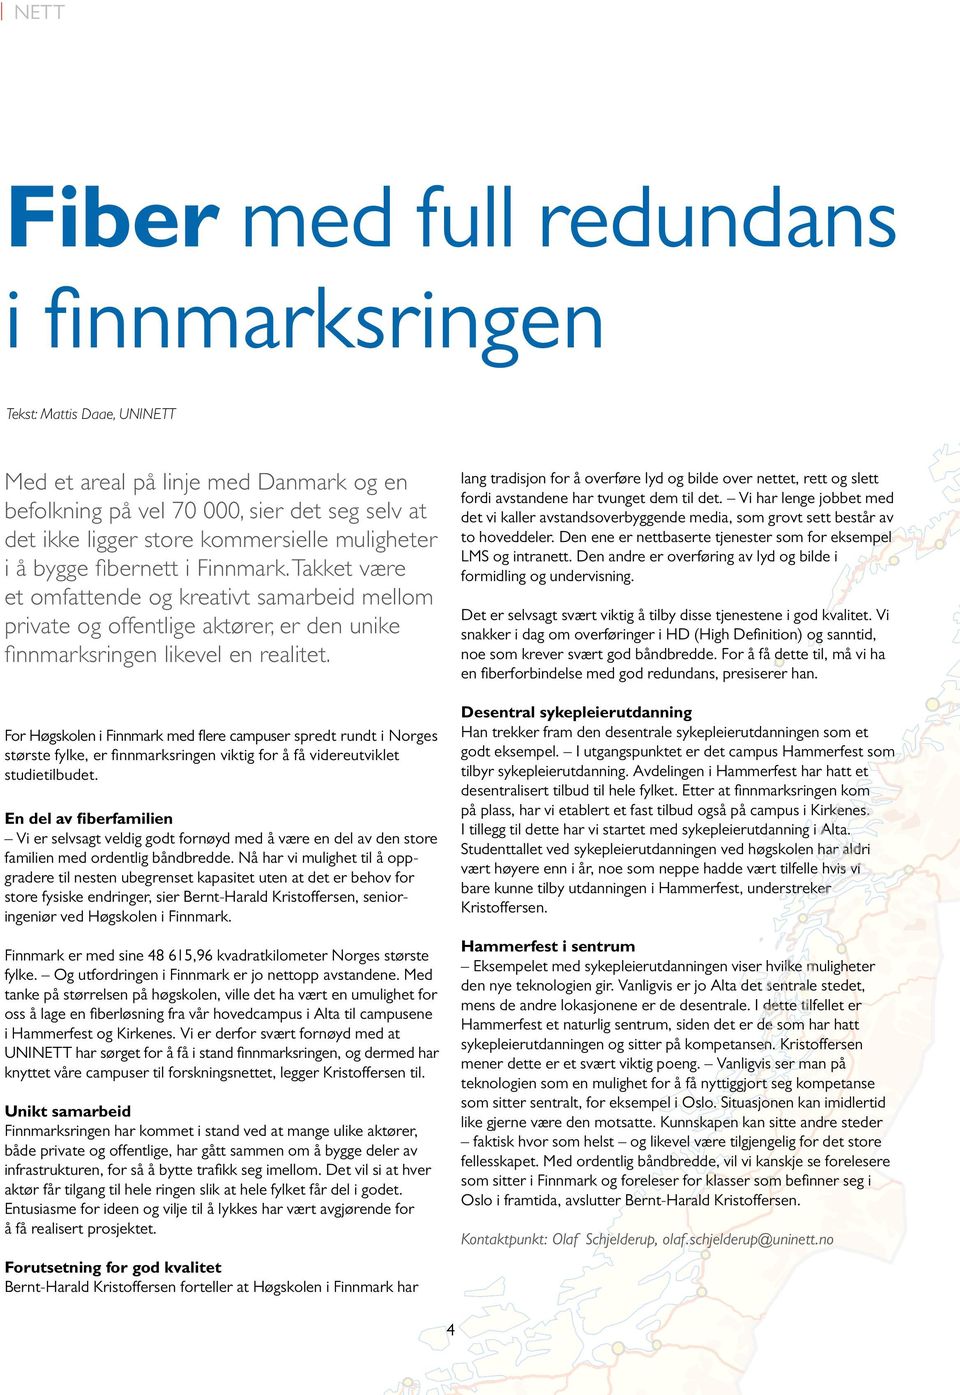 For Høgskolen i Finnmark med fl ere campuser spredt rundt i Norges største fylke, er fi nnmarksringen viktig for å få videreutviklet studietilbudet.